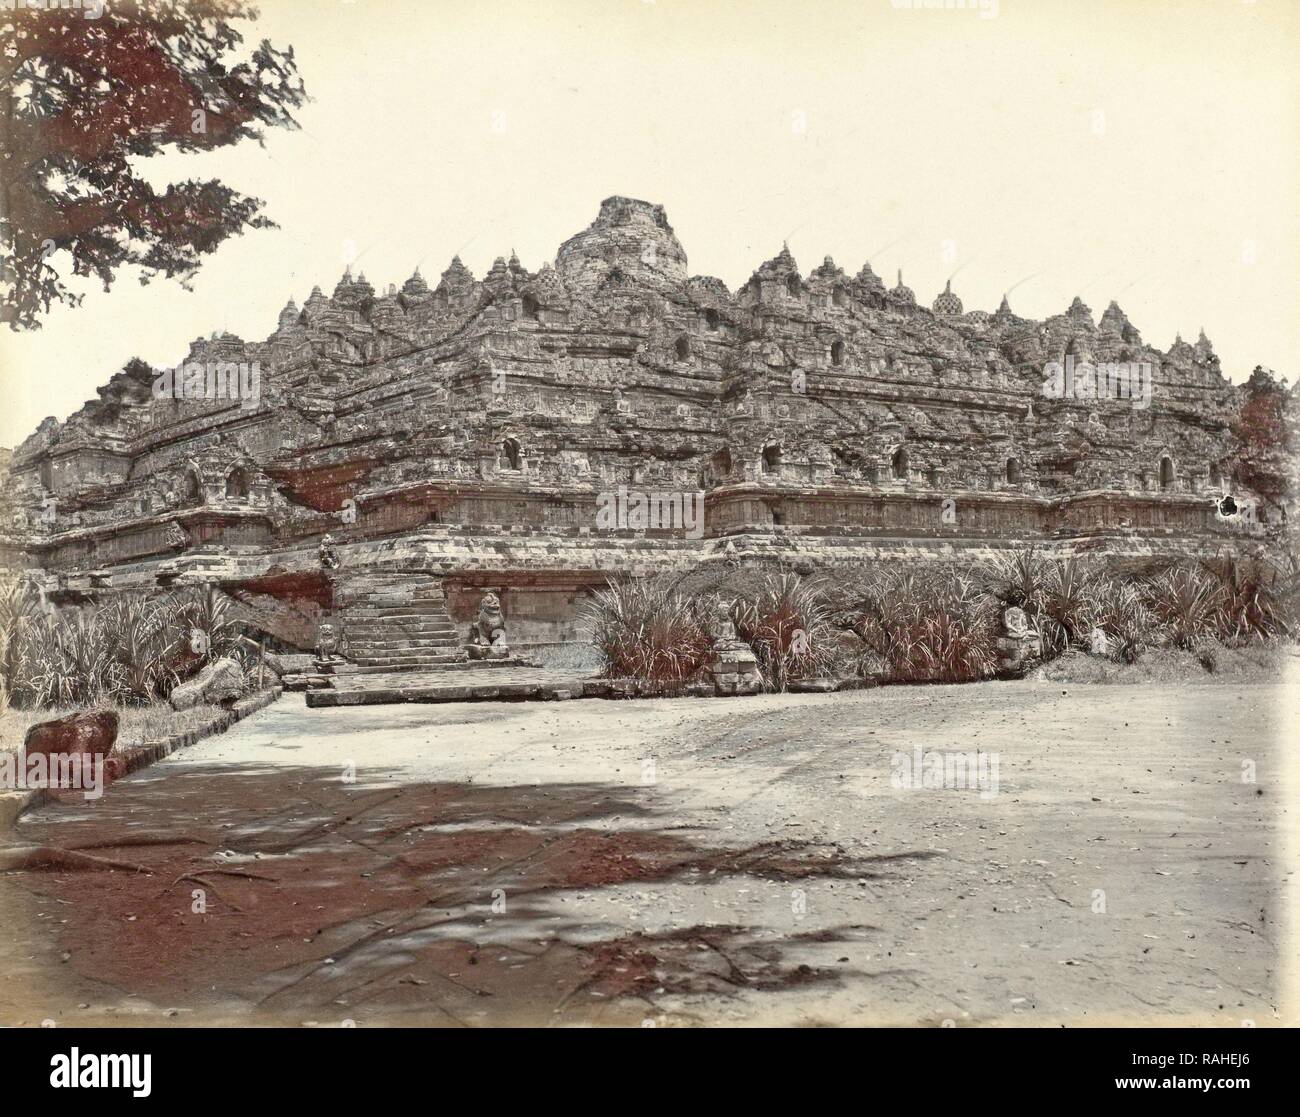 Il Borobudur in Java, Indonesia, anonimo, c. 1895 - c. 1905. Reinventato da Gibon. Arte Classica con un tocco di moderno reinventato Foto Stock